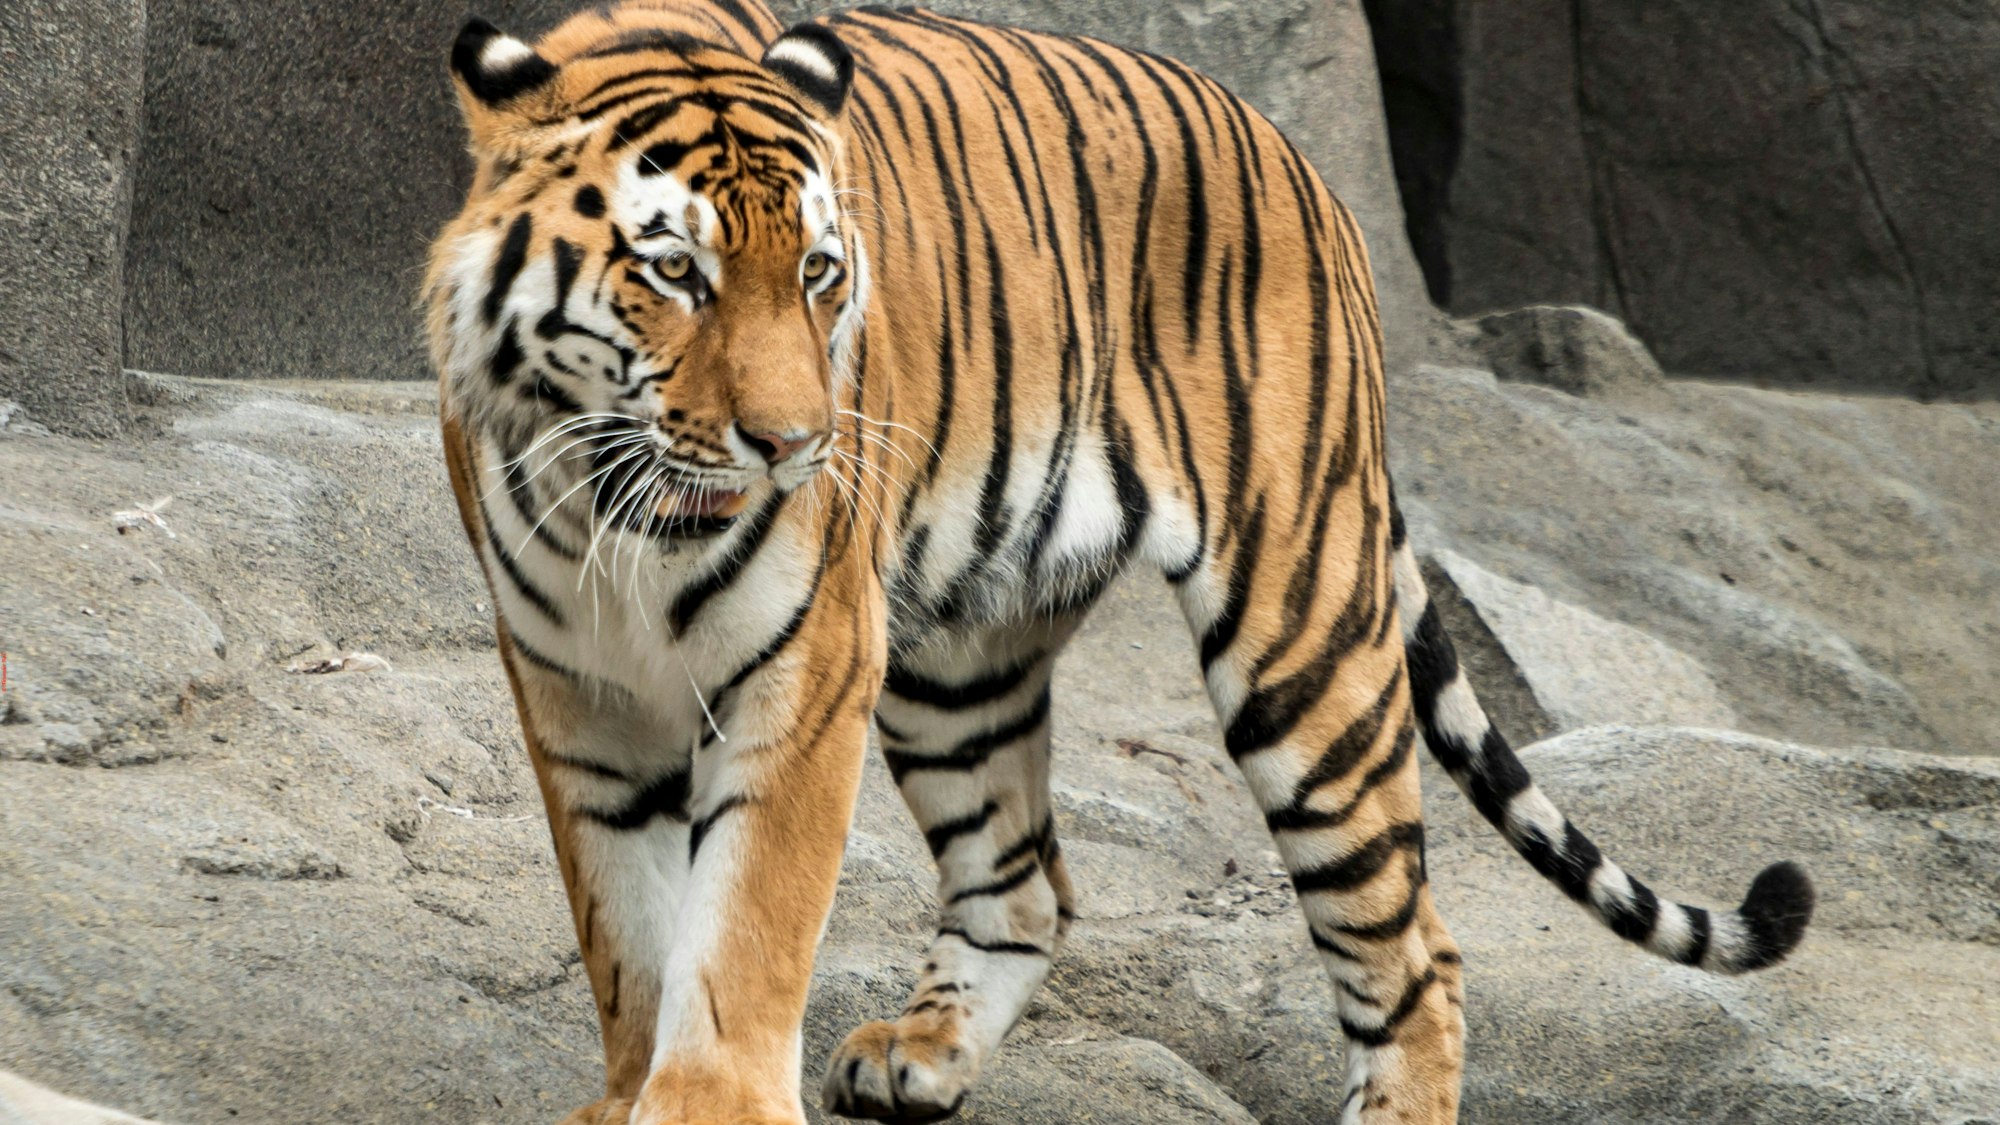 Zu sehen ist Amur-Tiger Sergan im Kölner Zoo, der auf steinigem Untergrund läuft.